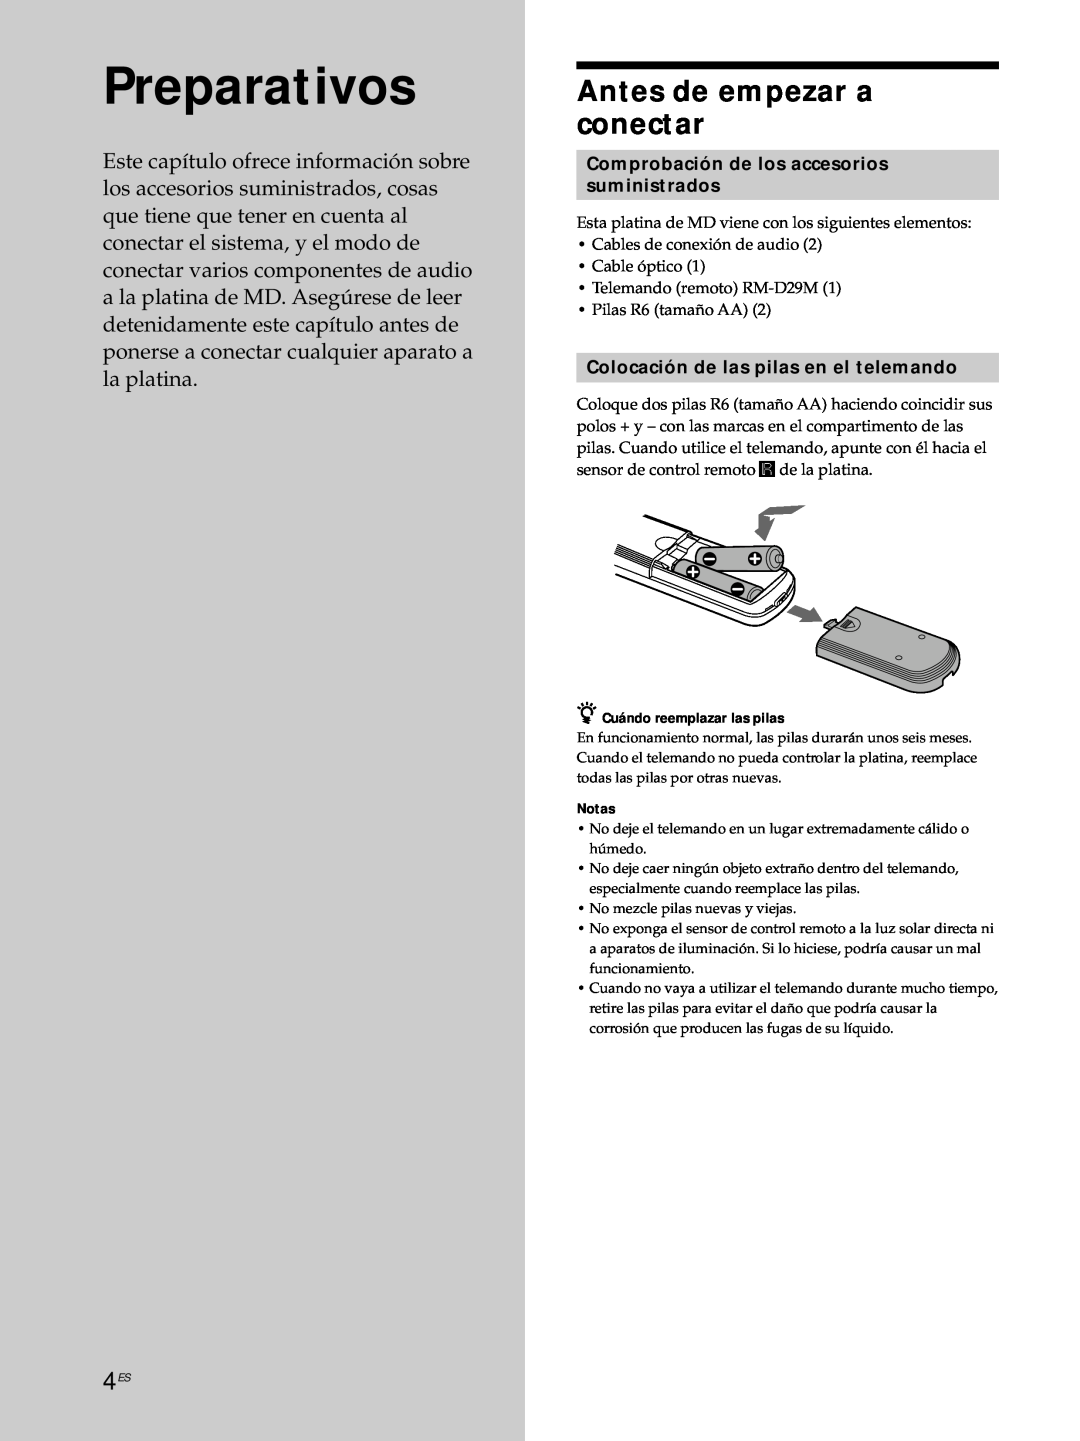 Sony MDS-JE530 manual Preparativos, Antes de empezar a conectar, Comprobación de los accesorios suministrados 